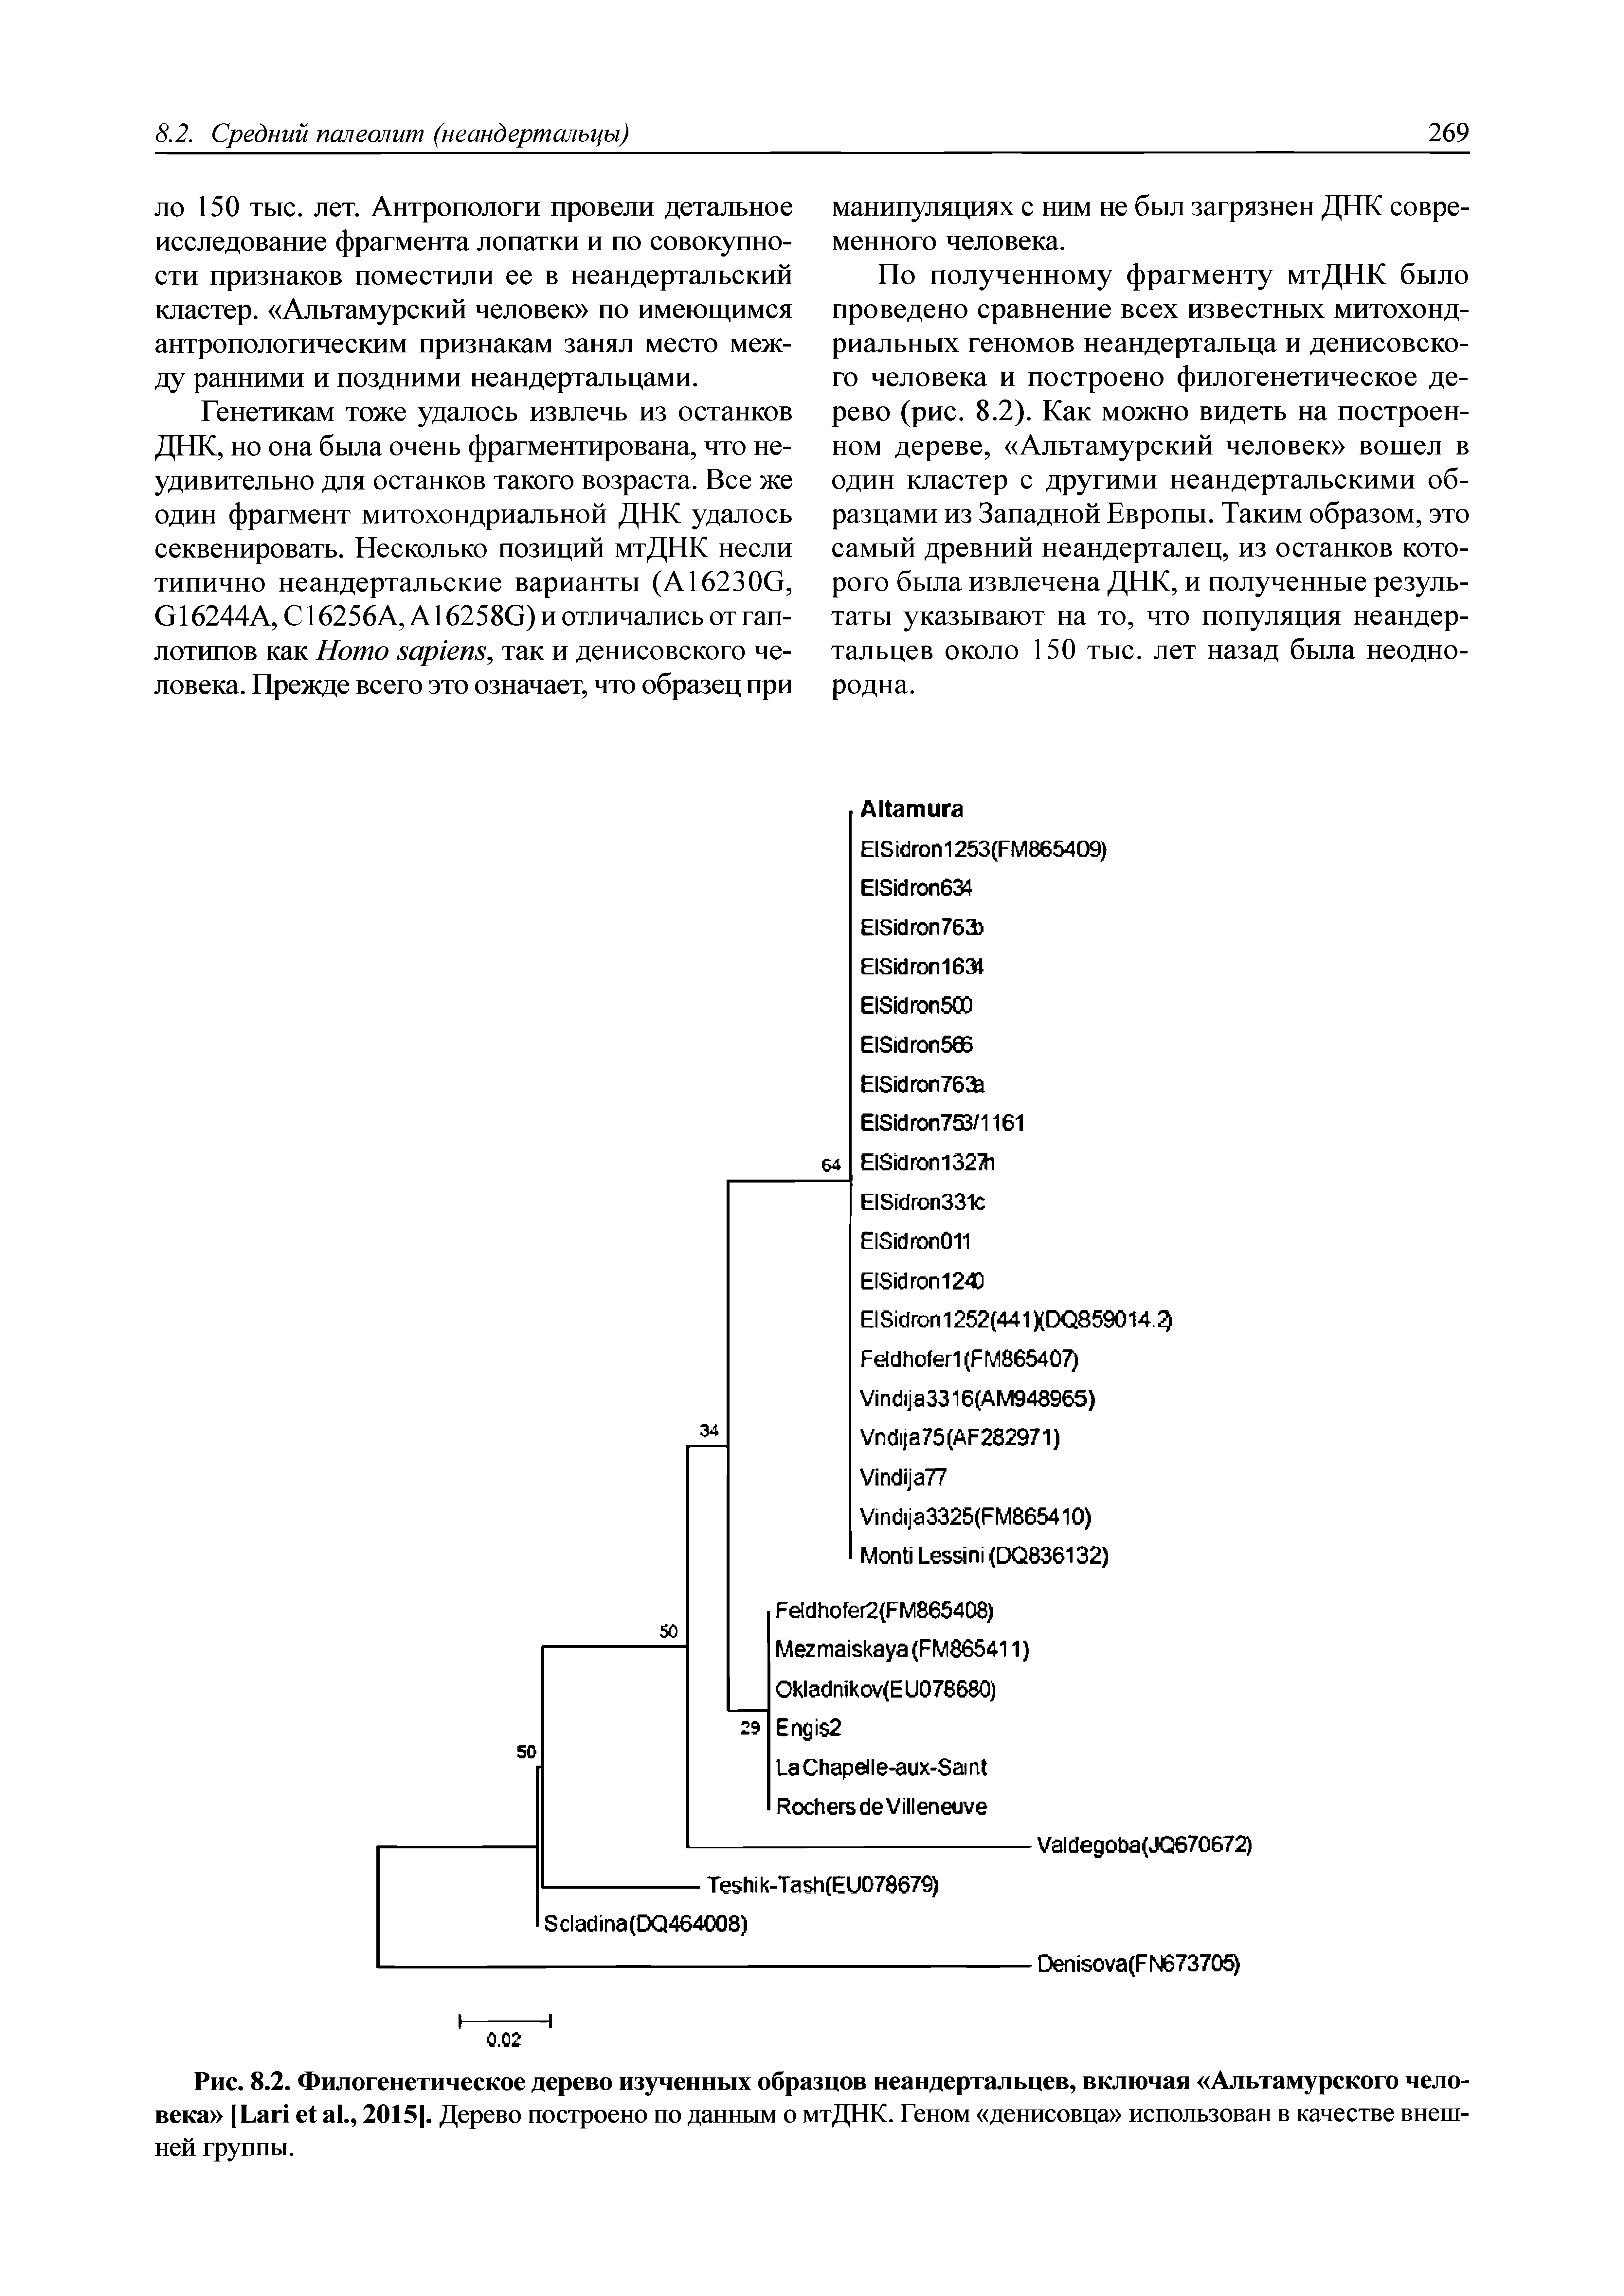 Рис. 8.2. Филогенетическое дерево изученных образцов неандертальцев, включая Альтамурского человека L ., 20151. Дерево построено по данным о мтДНК. Геном денисовца использован в качестве внешней группы.